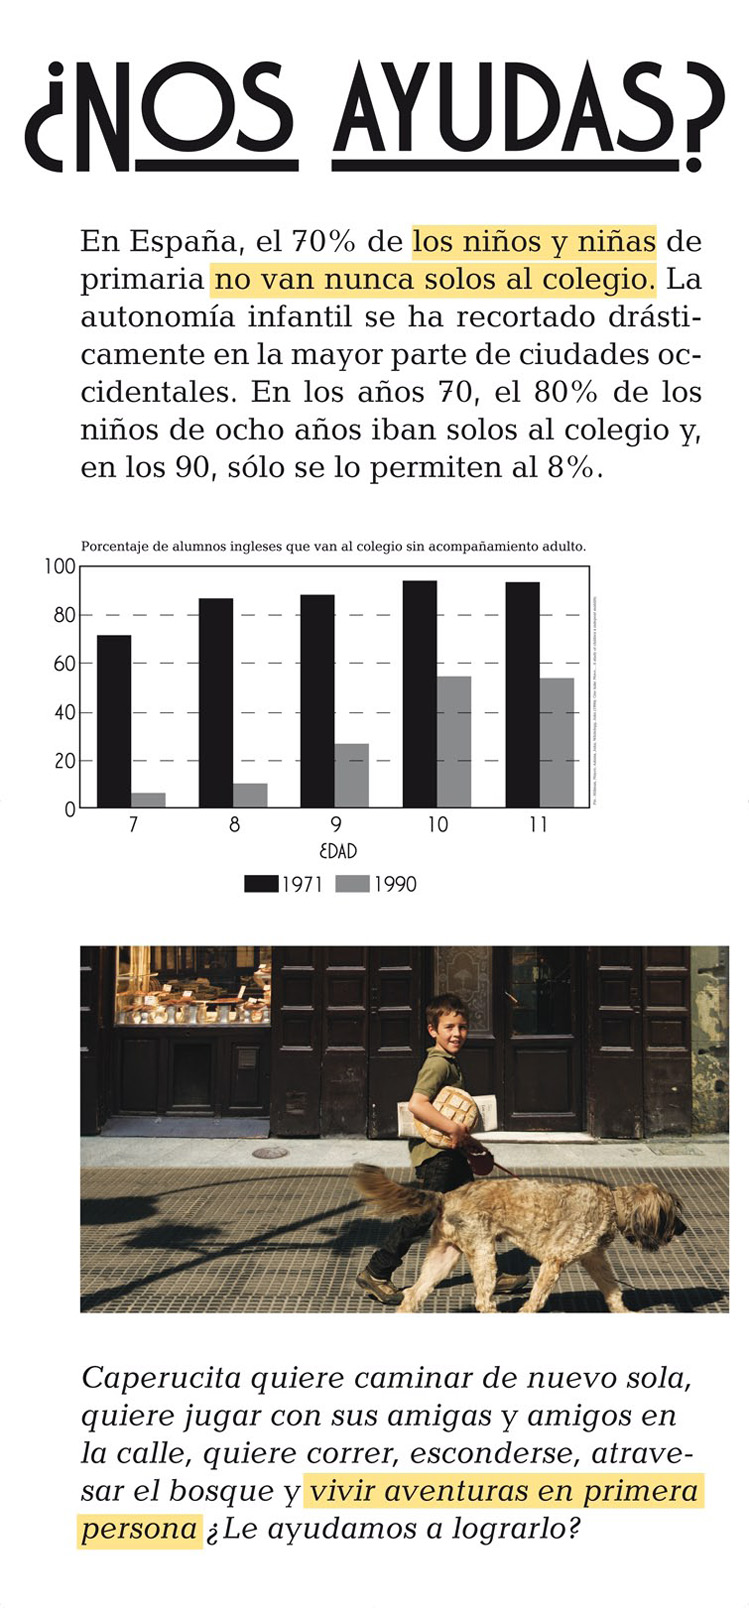 Panel 7 (complementa al panel 1). En España, el 70% de los niños y niñas de primaria no van nunca solos al colegio. Hace sólo 40 años, el 80% de los niños de ocho años lo hacían. ¿Les ayudamos a recuperar la calle?